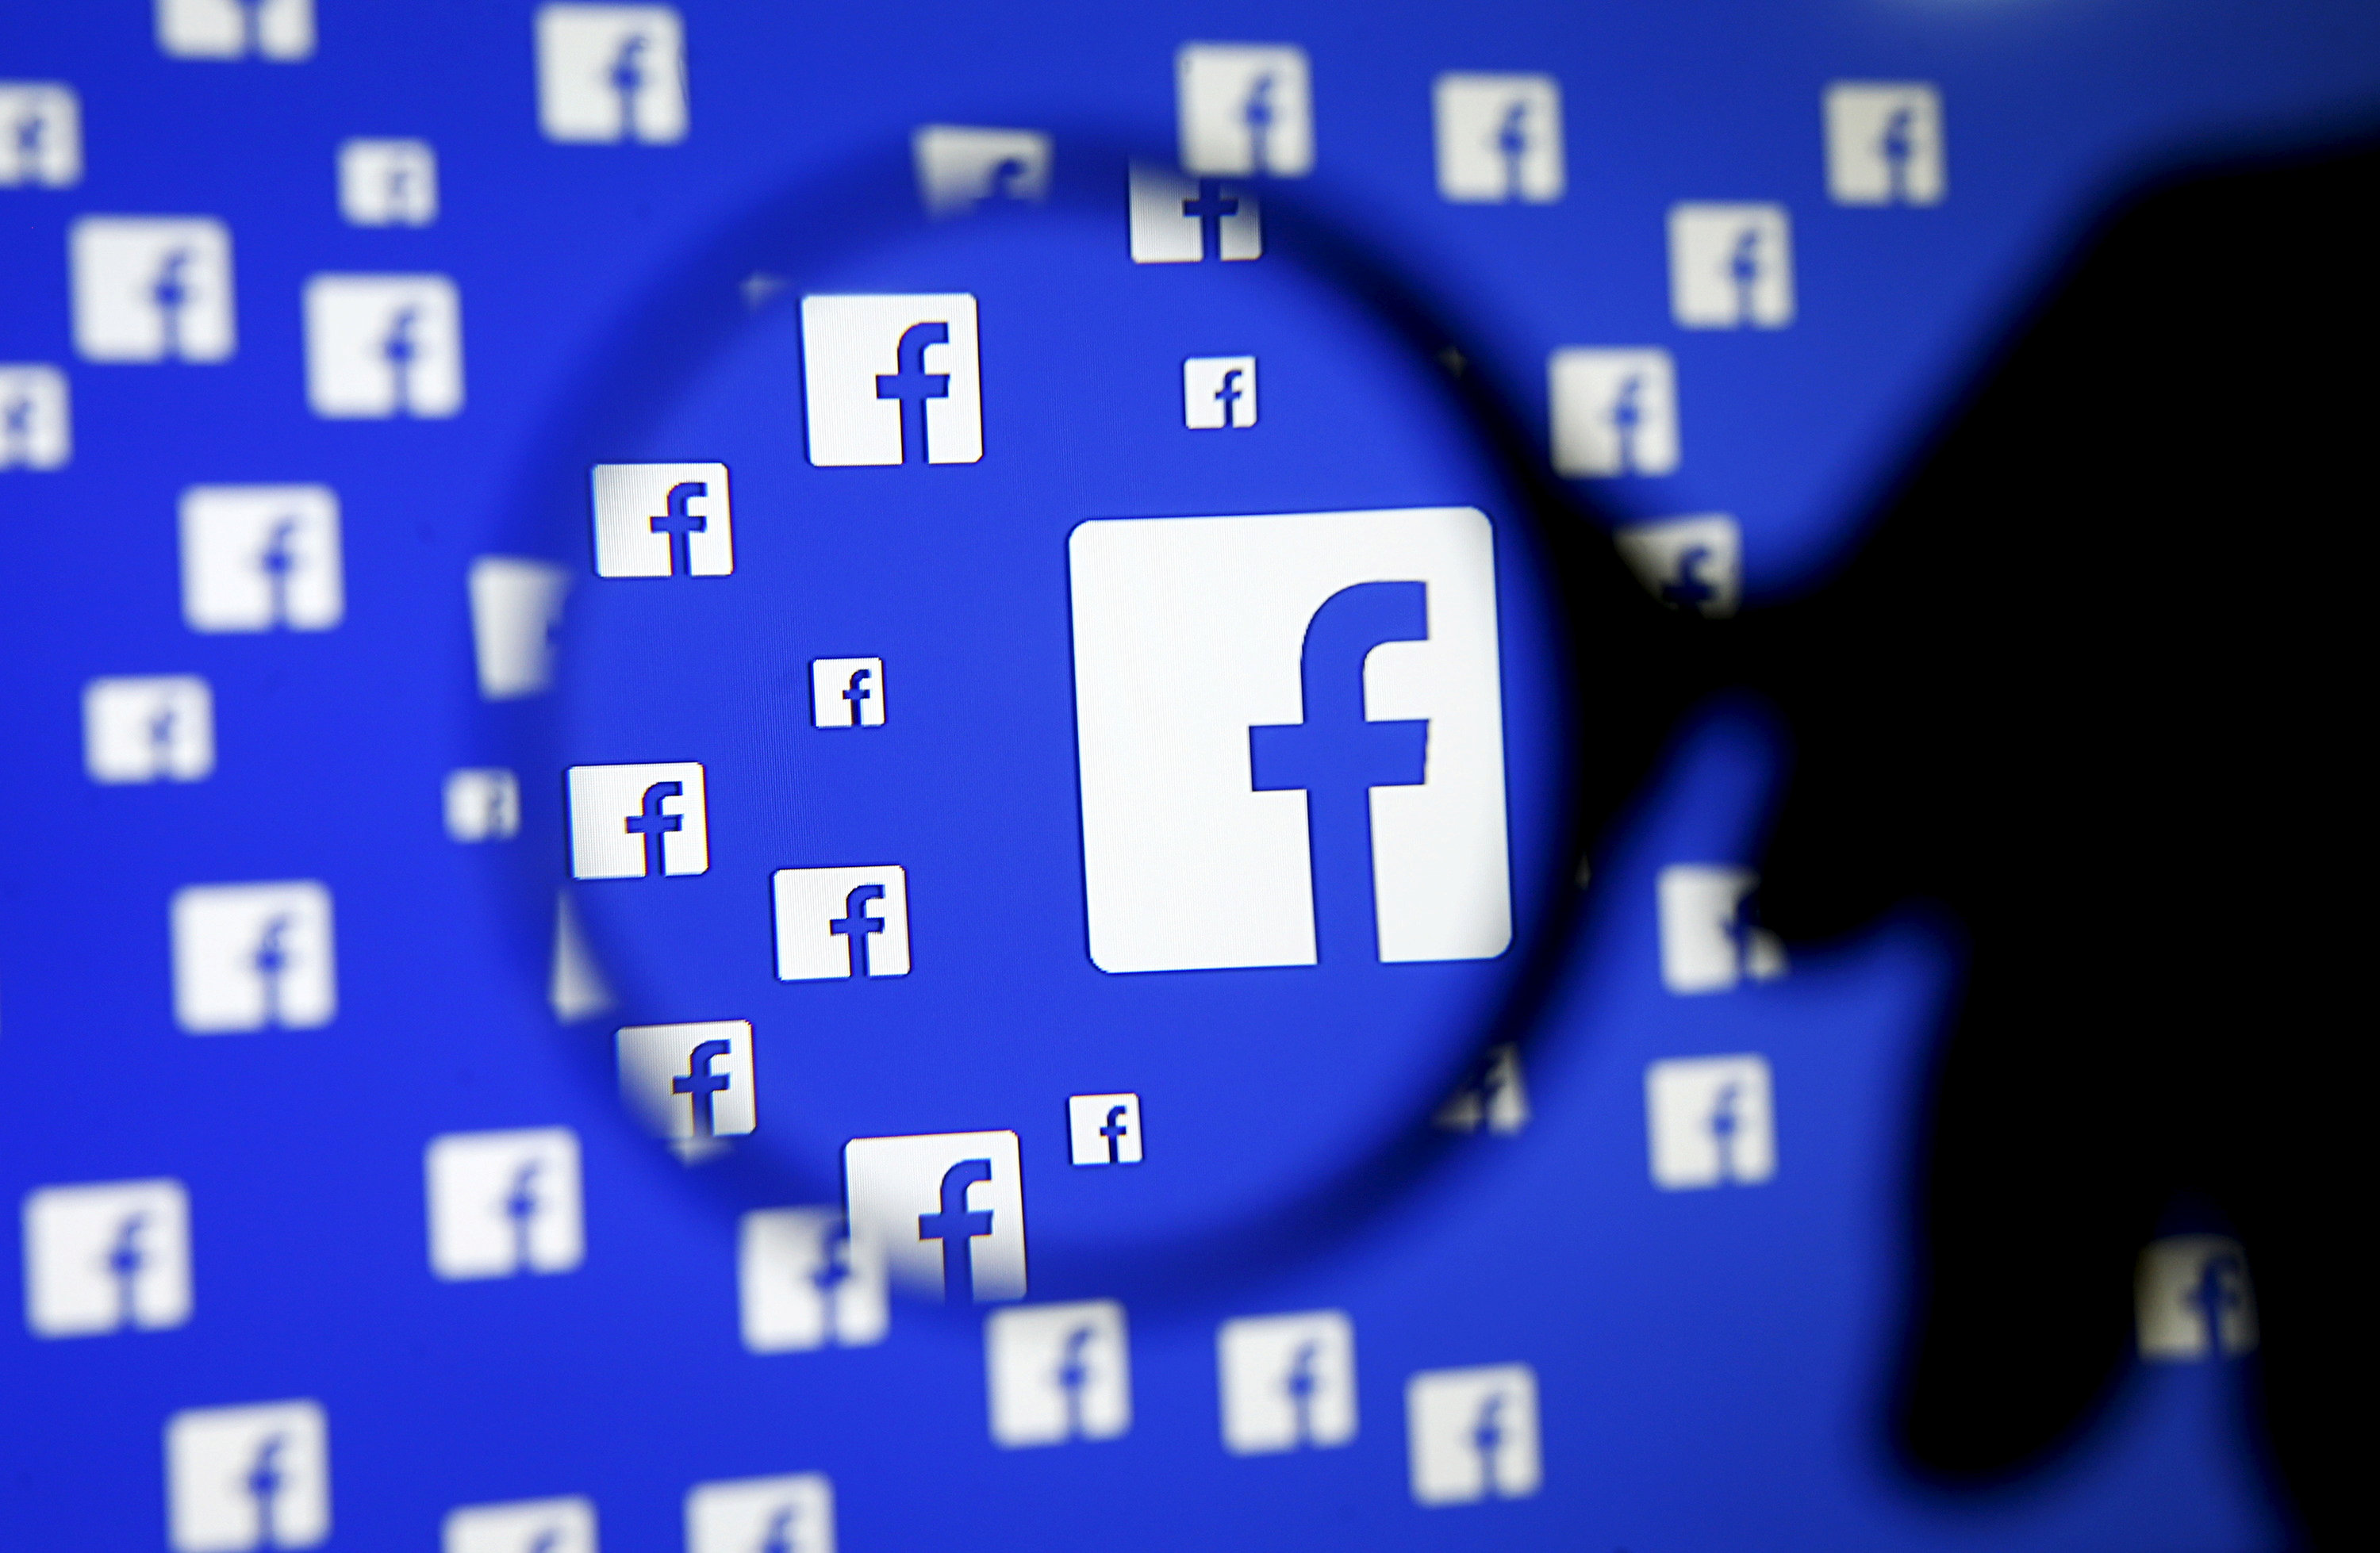 Γ.Φιλιππάκης: Δεν συνιστούν δημόσιο διάλογο όσα γράφονται στο Facebook